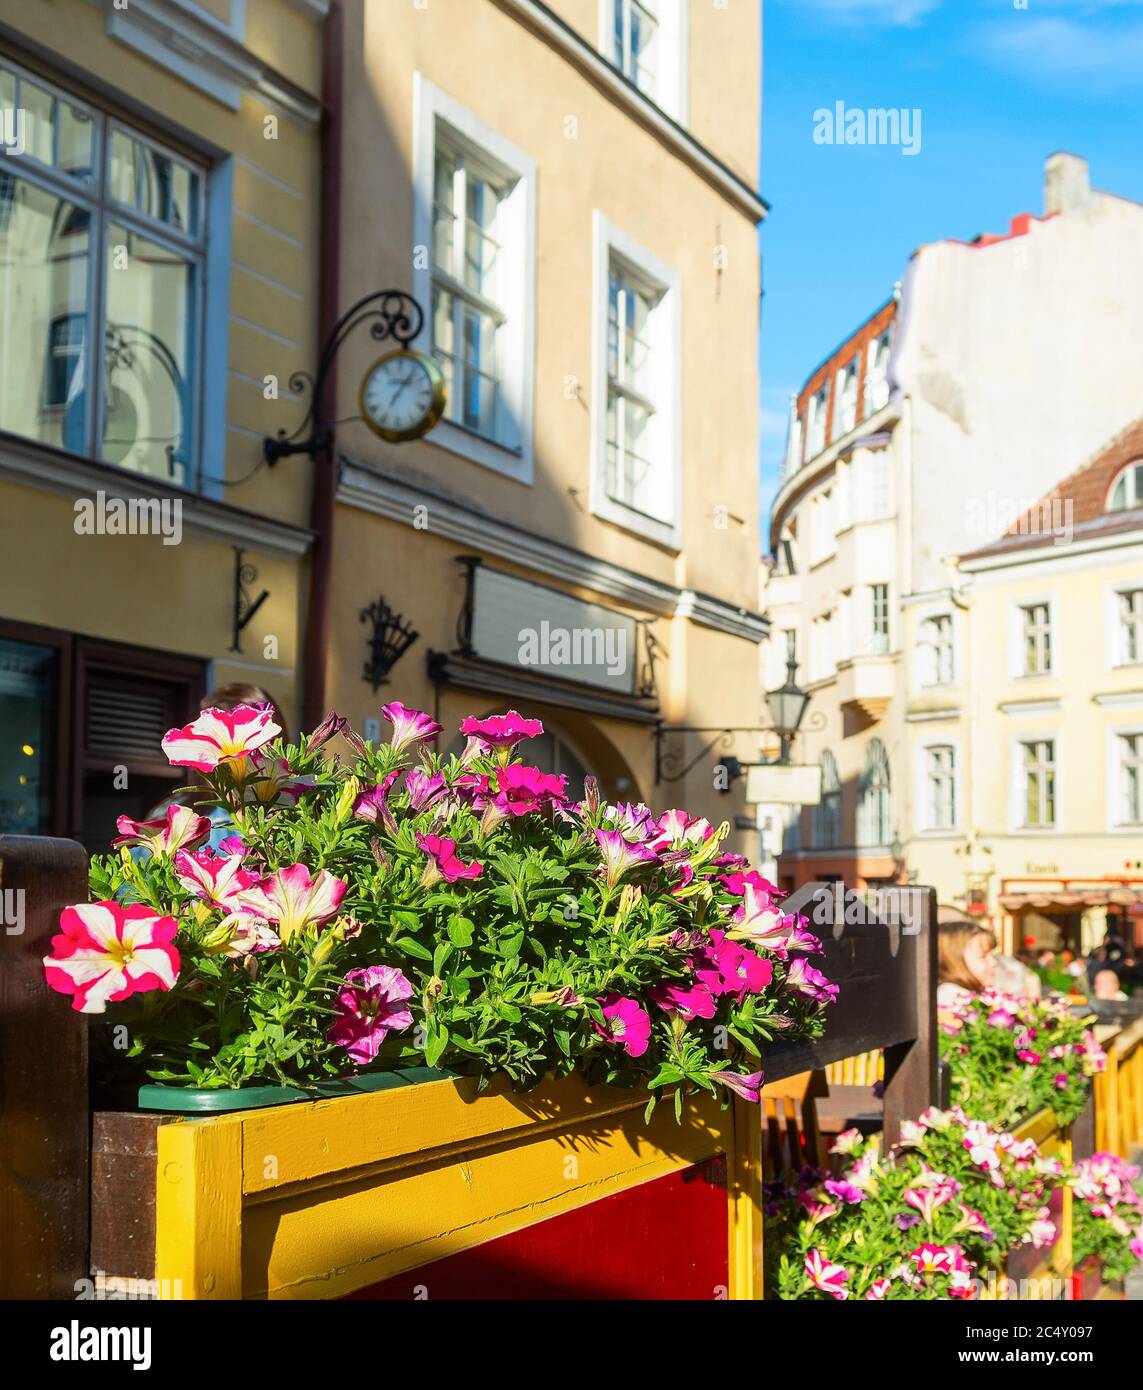 Soleada ciudad Vieja Street View, flores por restaurant, la gente visita, Tallin, Estonia Foto de stock